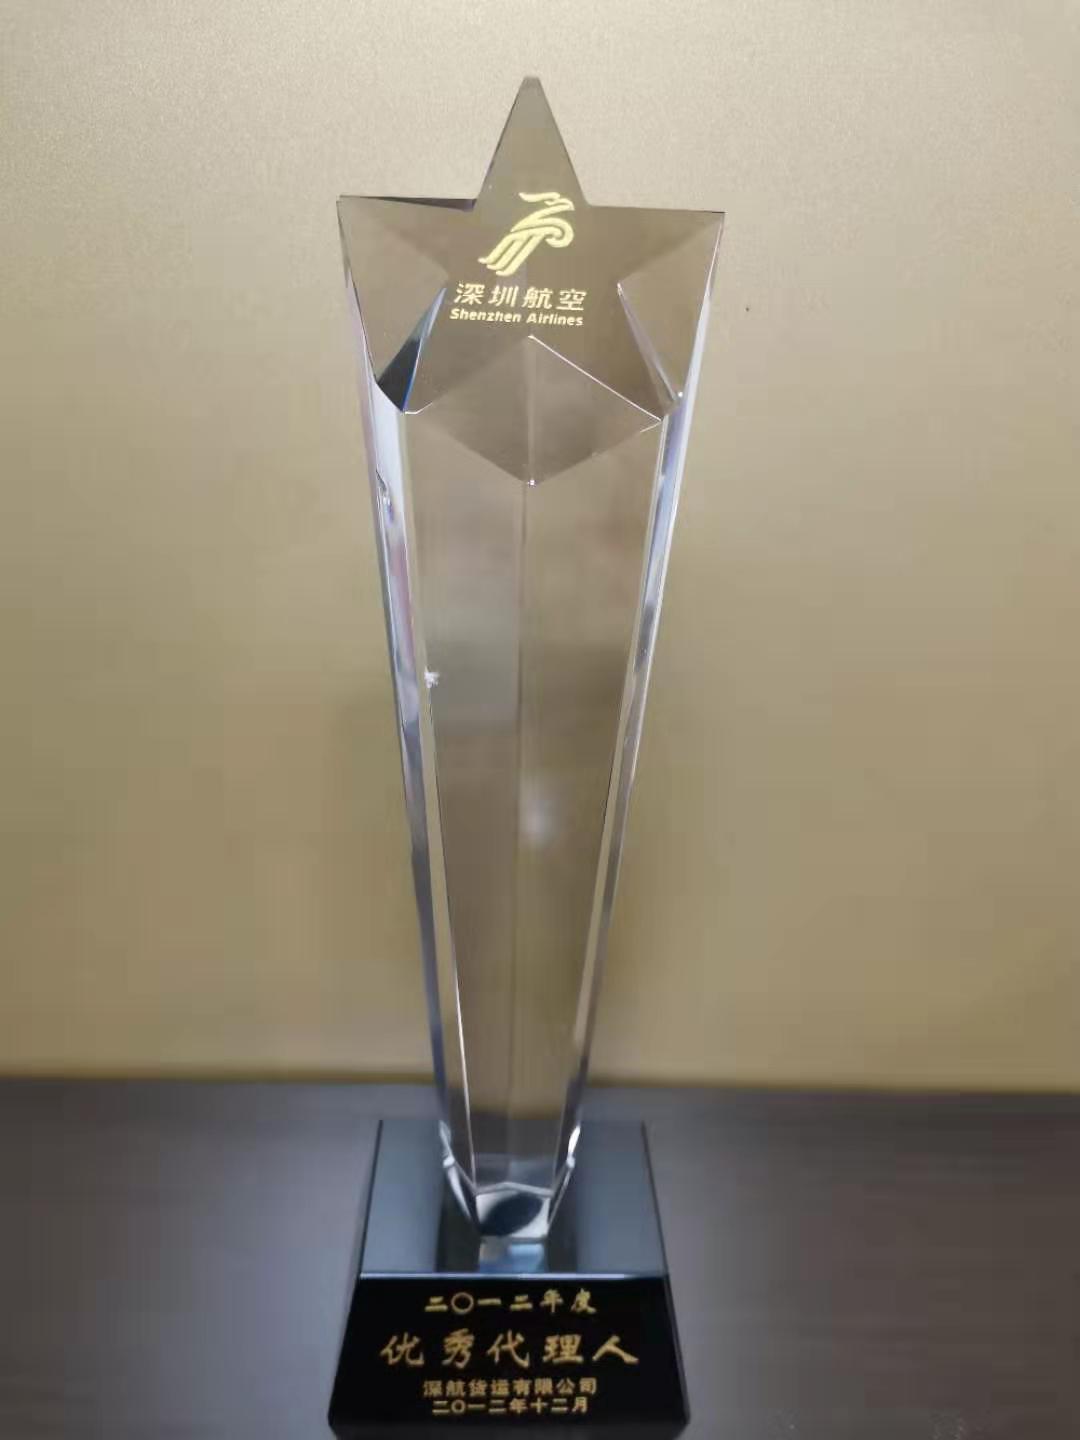 ZH Award 2012